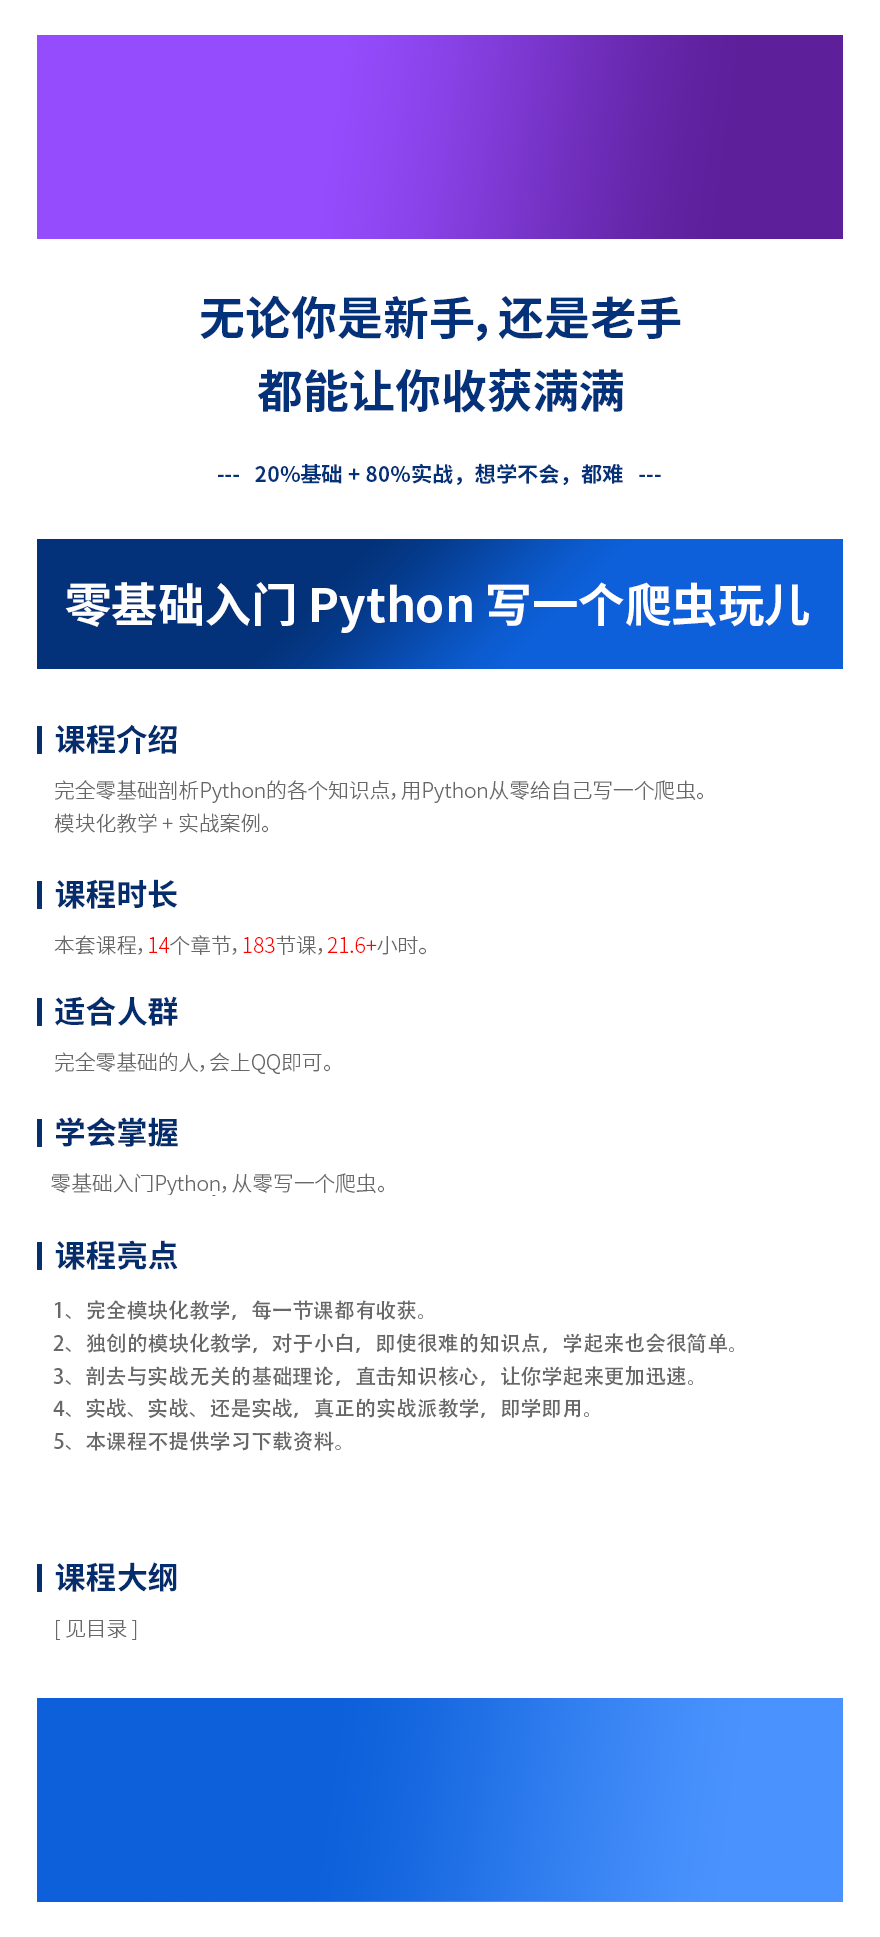 零基础入门 Python 写一个爬虫玩儿.png